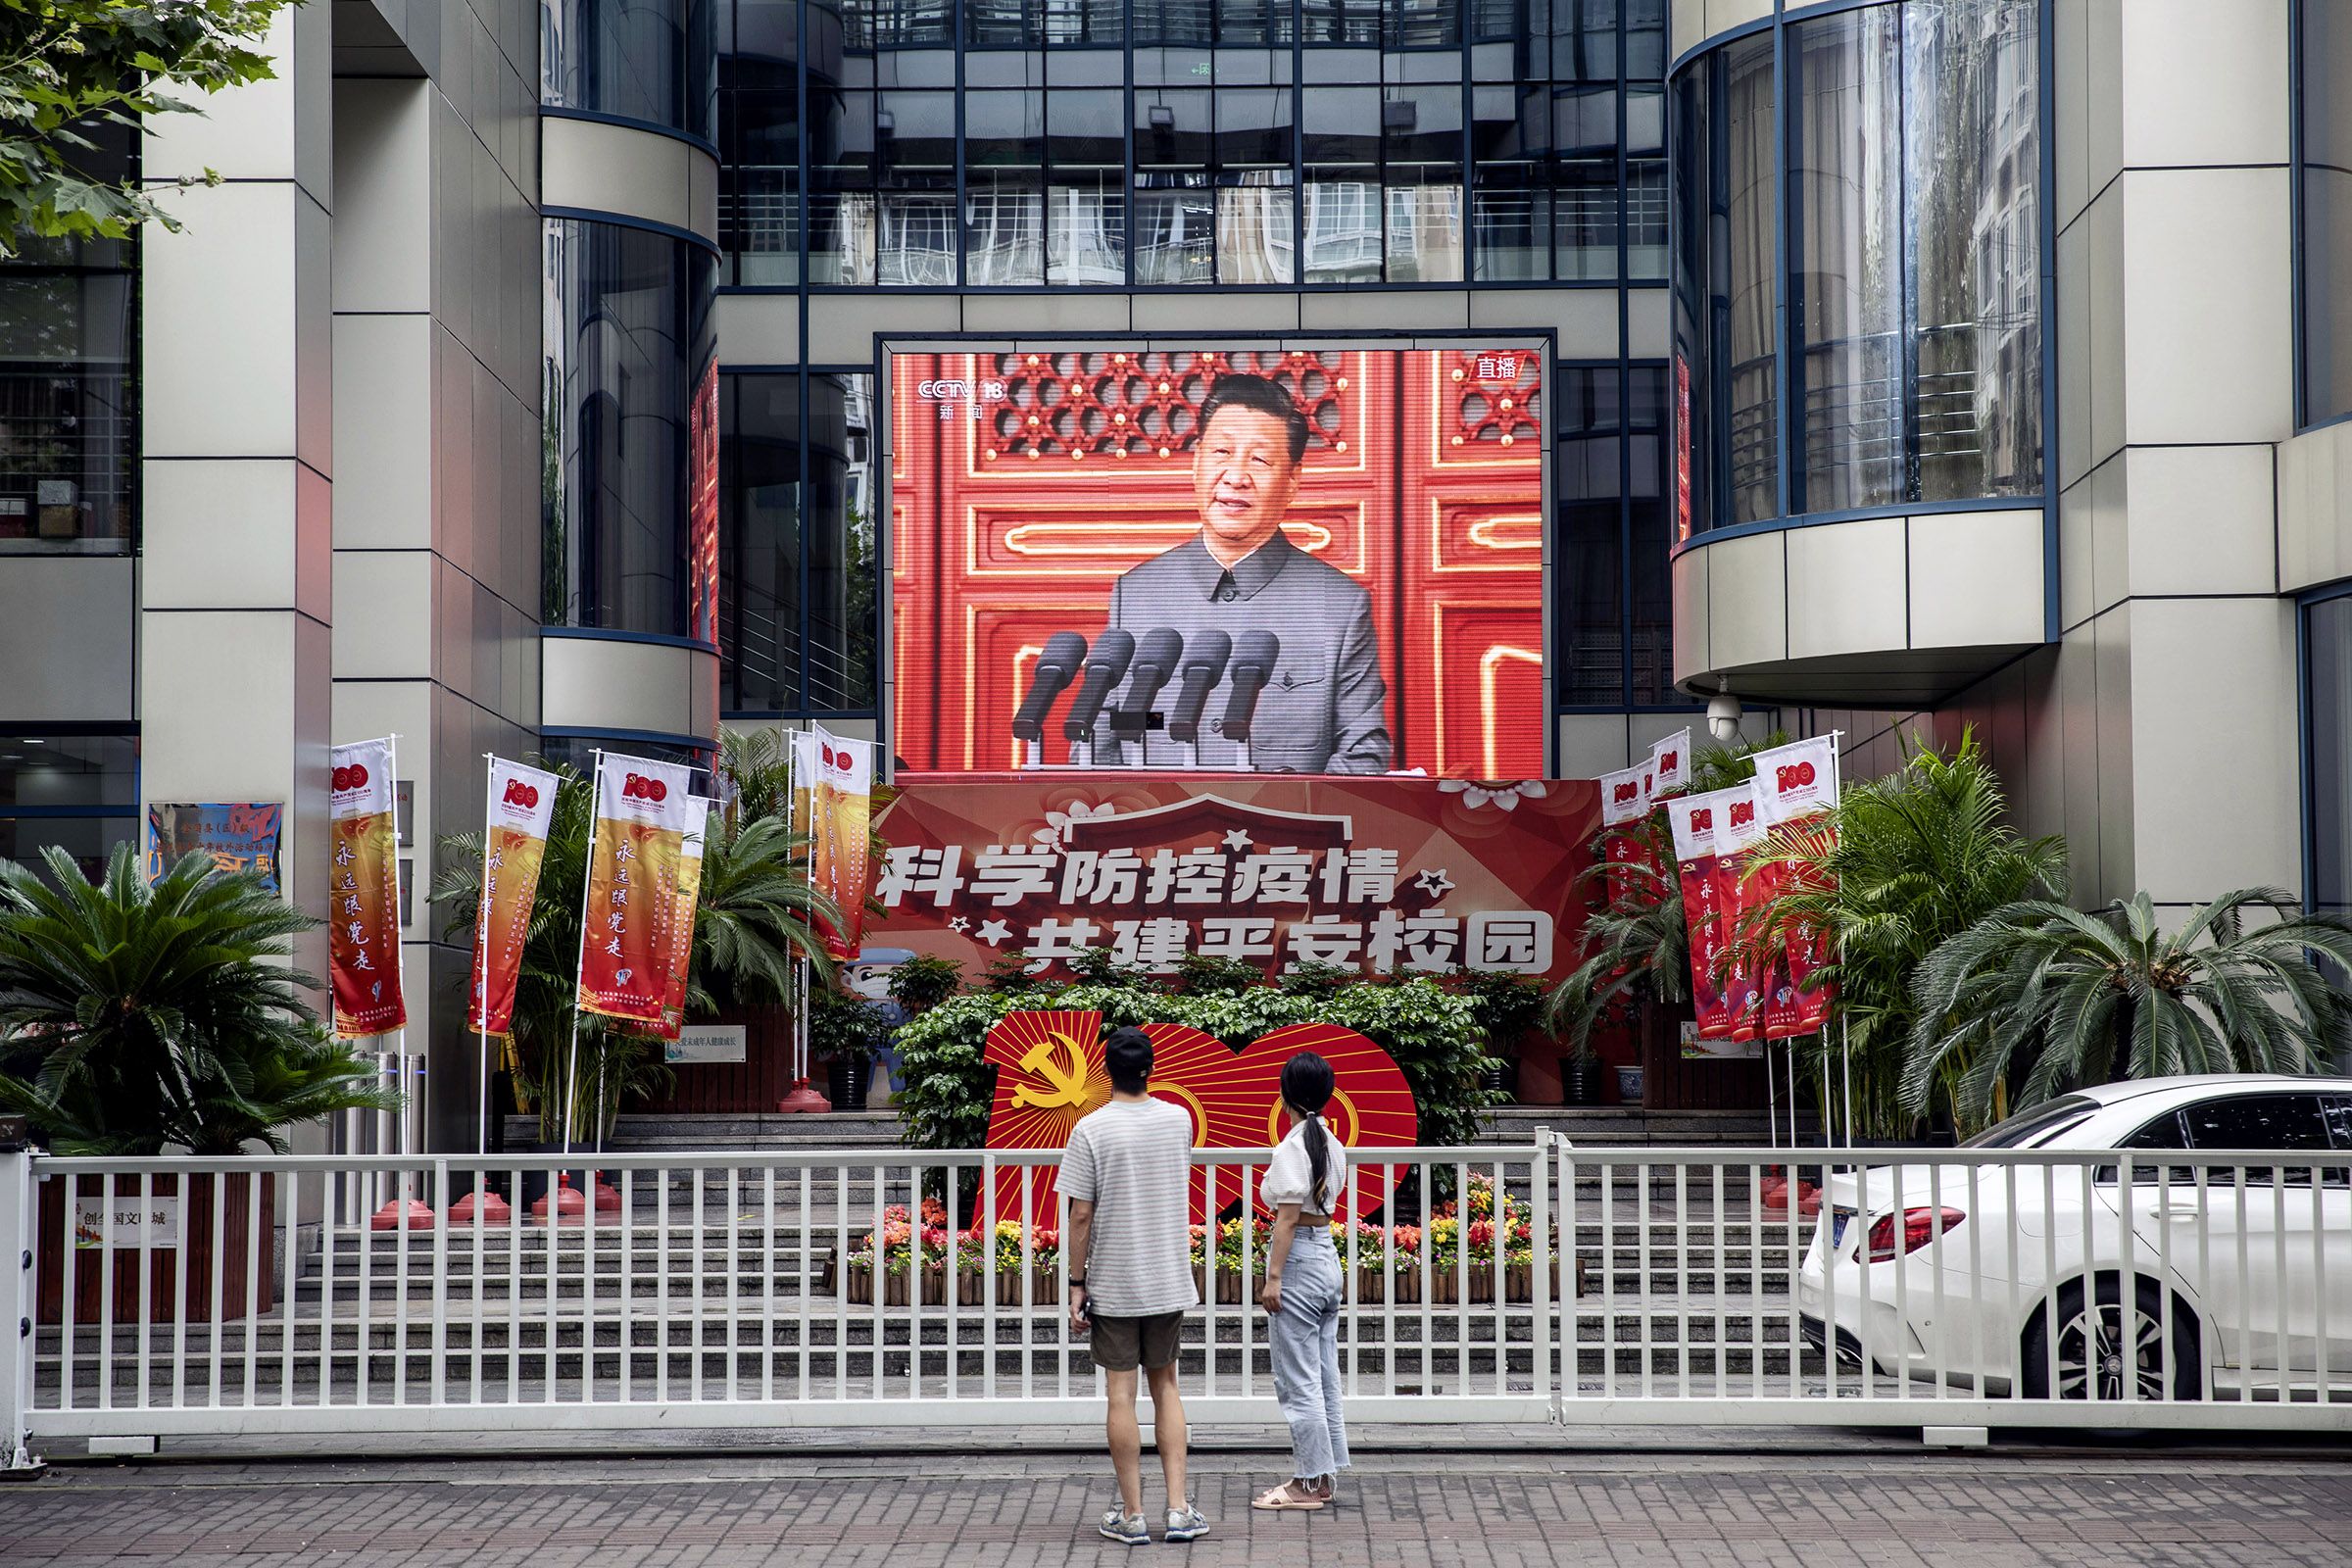 Decoraciones en la ceremonia por el centenario del Partido Comunista de China, transmitido en vivo en Shanghái el 1 de julio.